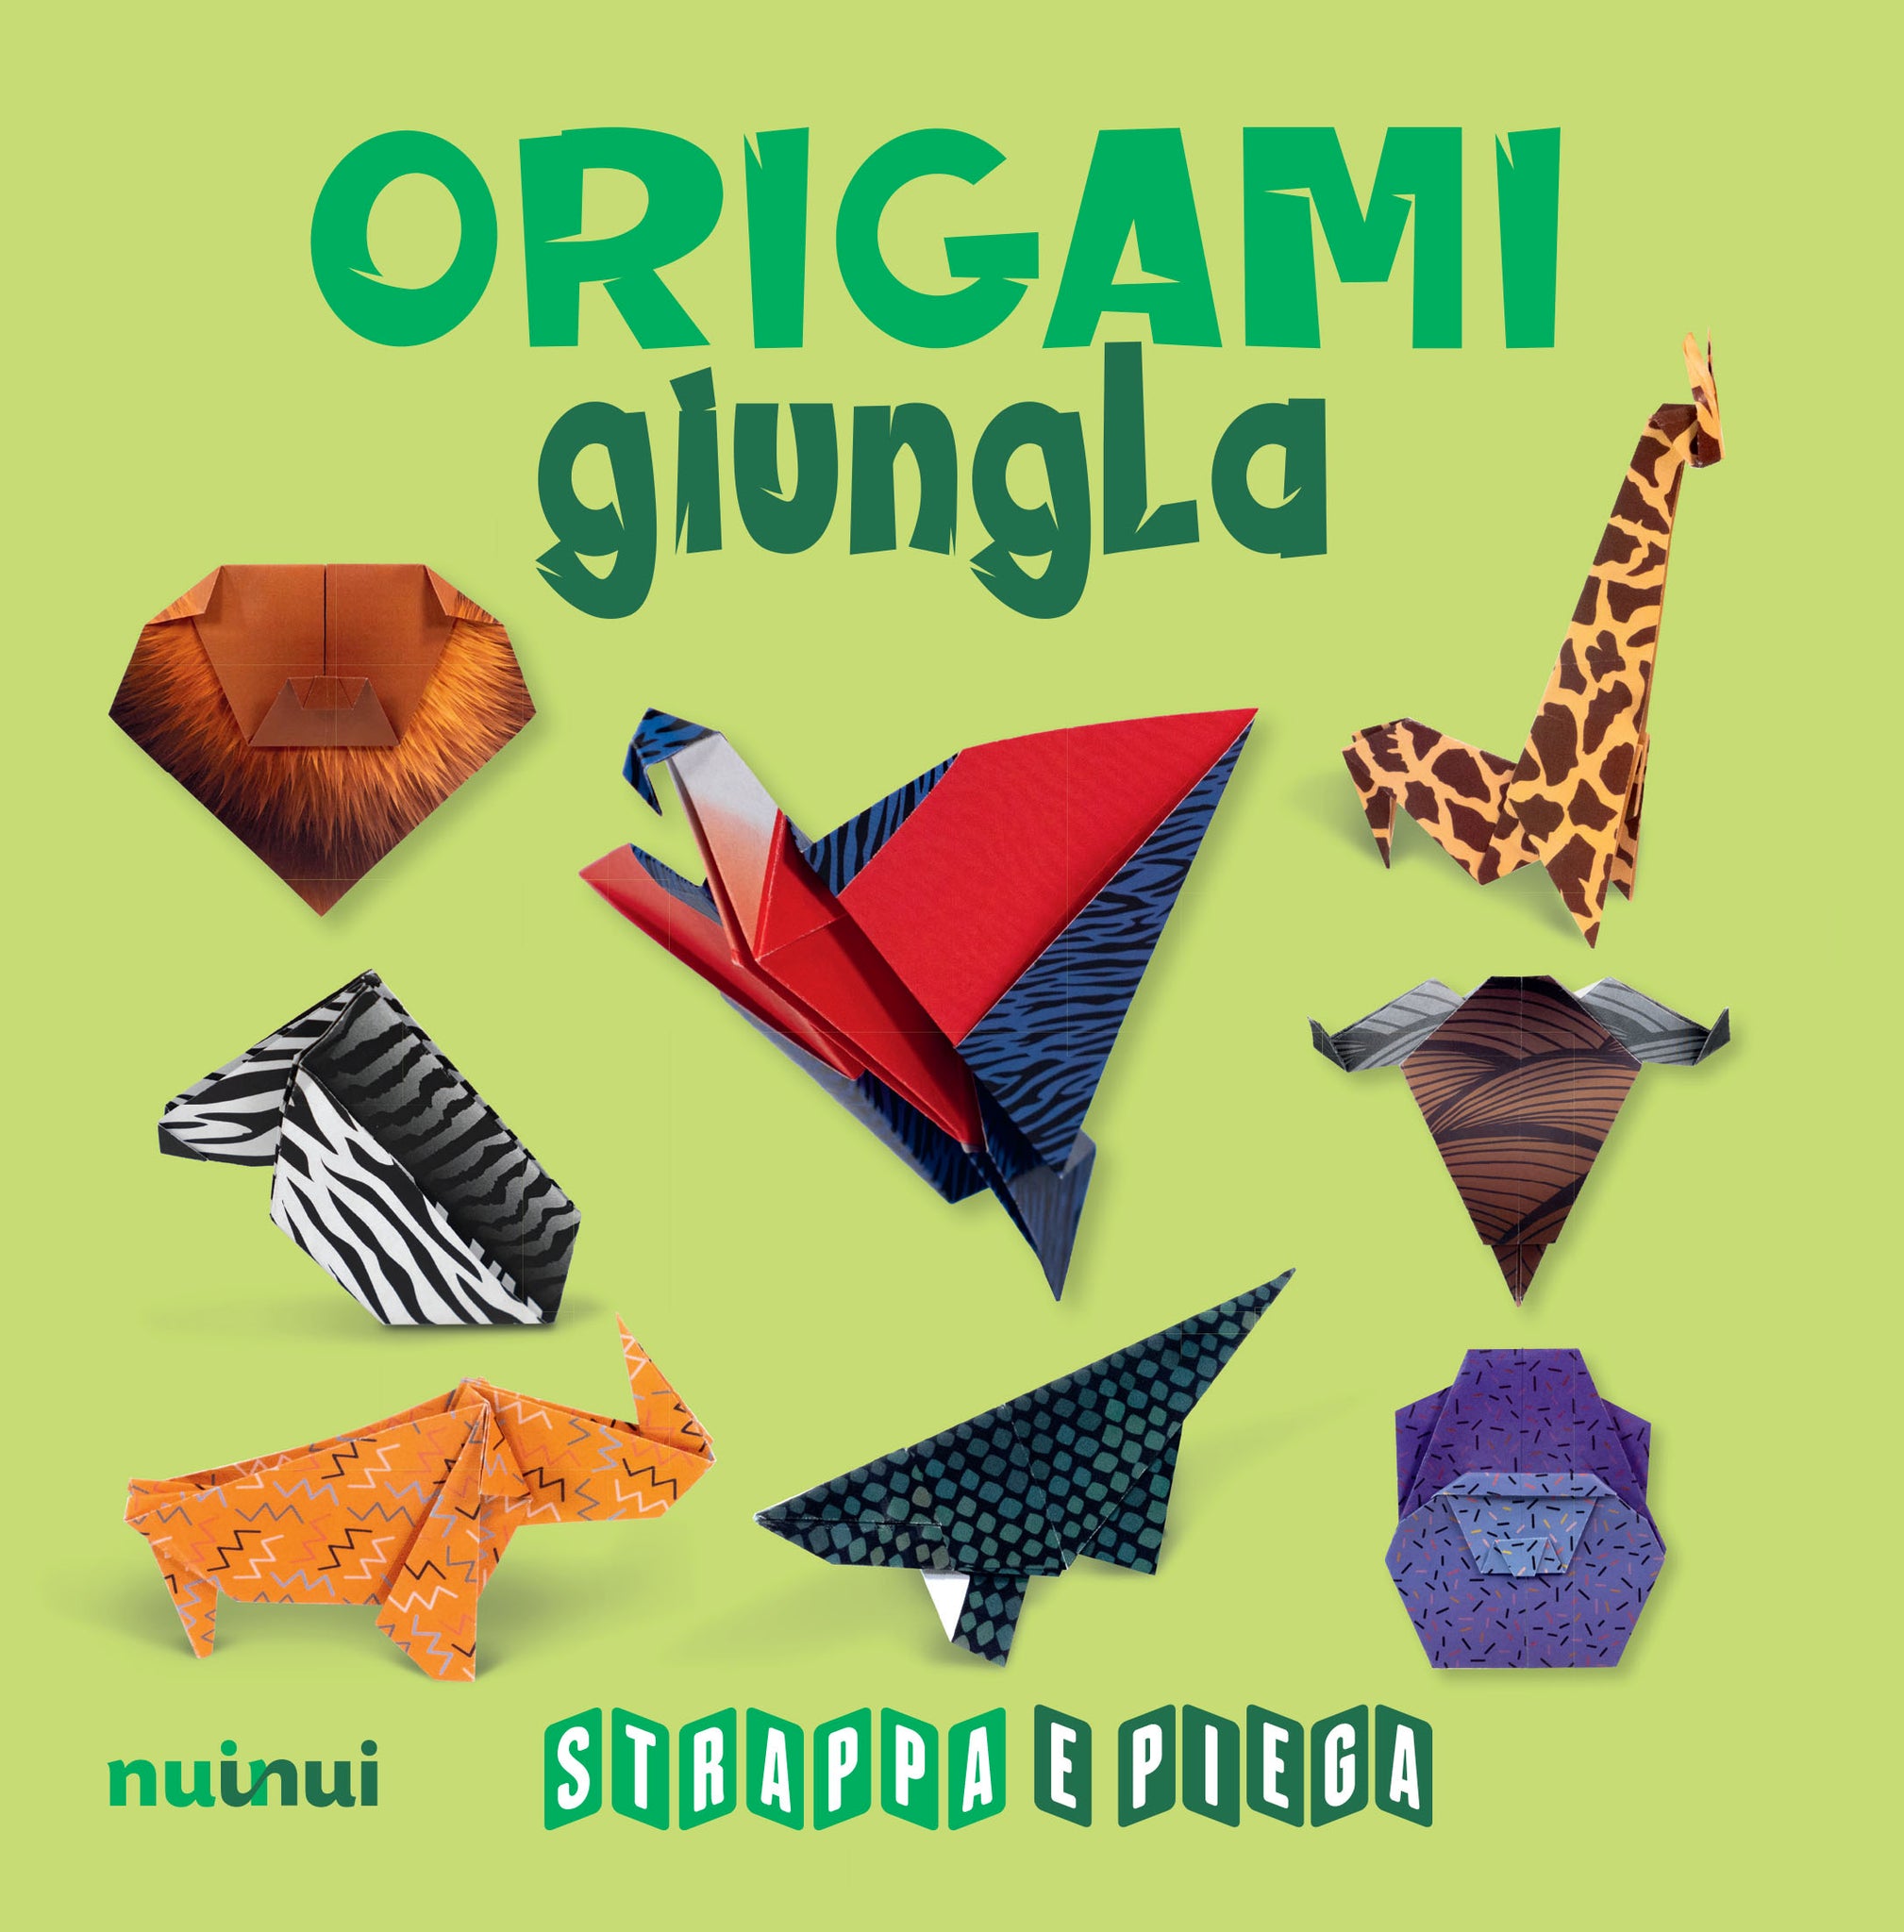 Origami jungle - Tear and fold